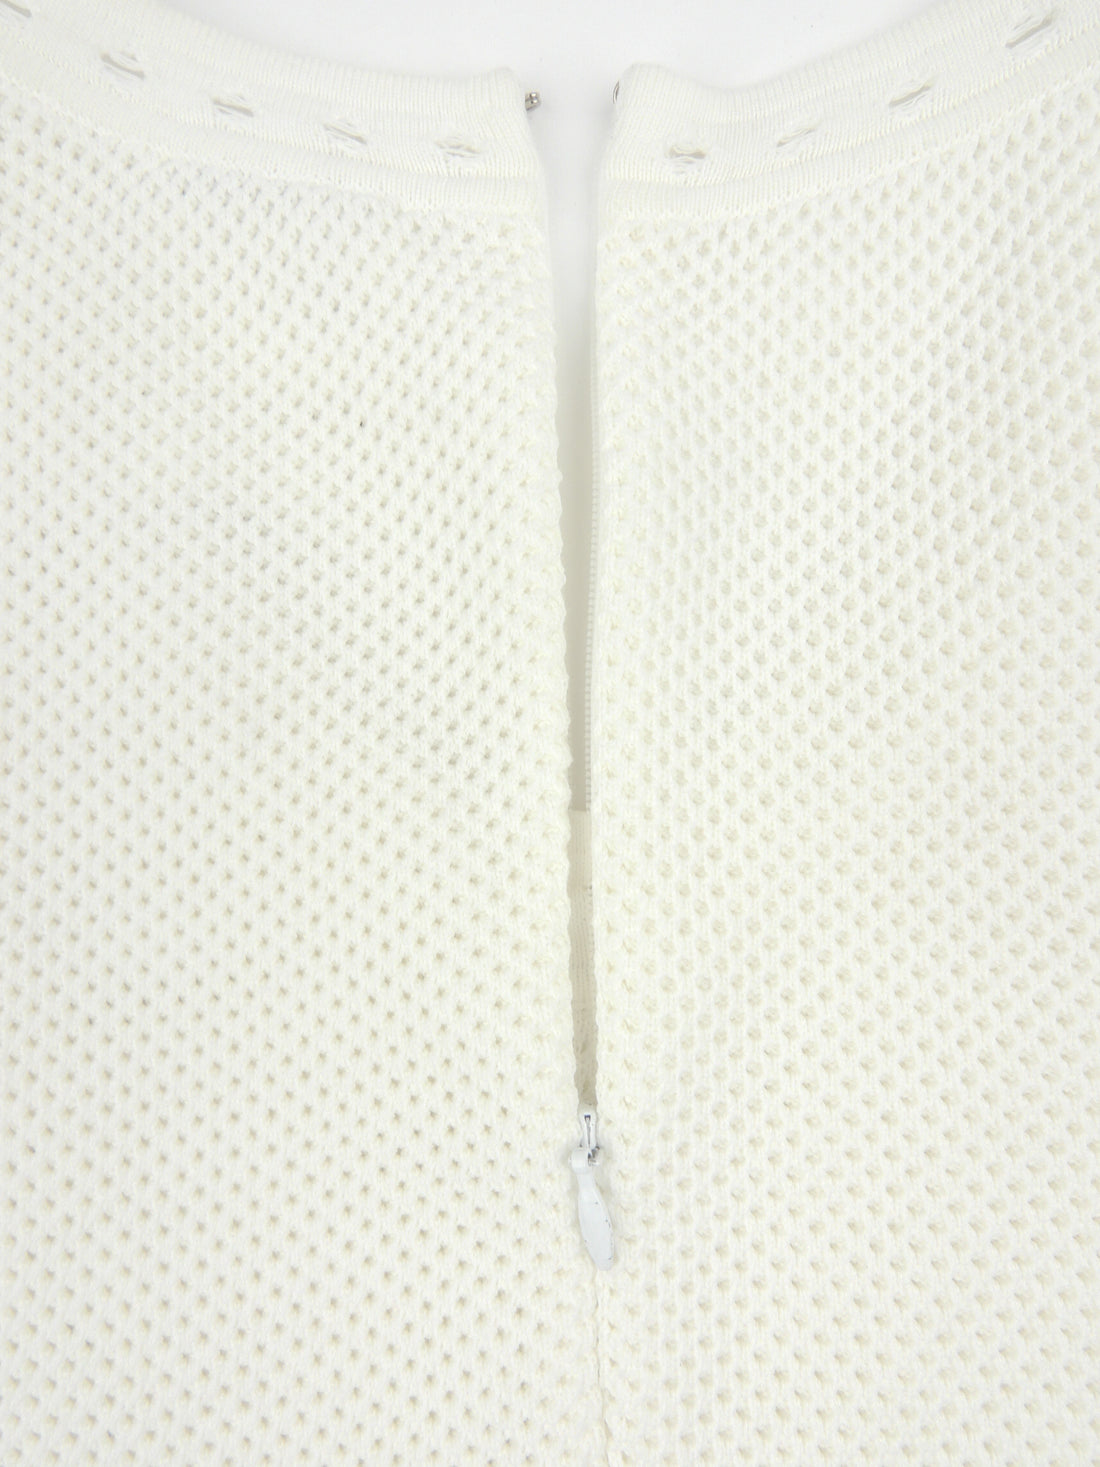 Chanel AW05 Cotton Knit Mesh Tennis Dress - 36 FR